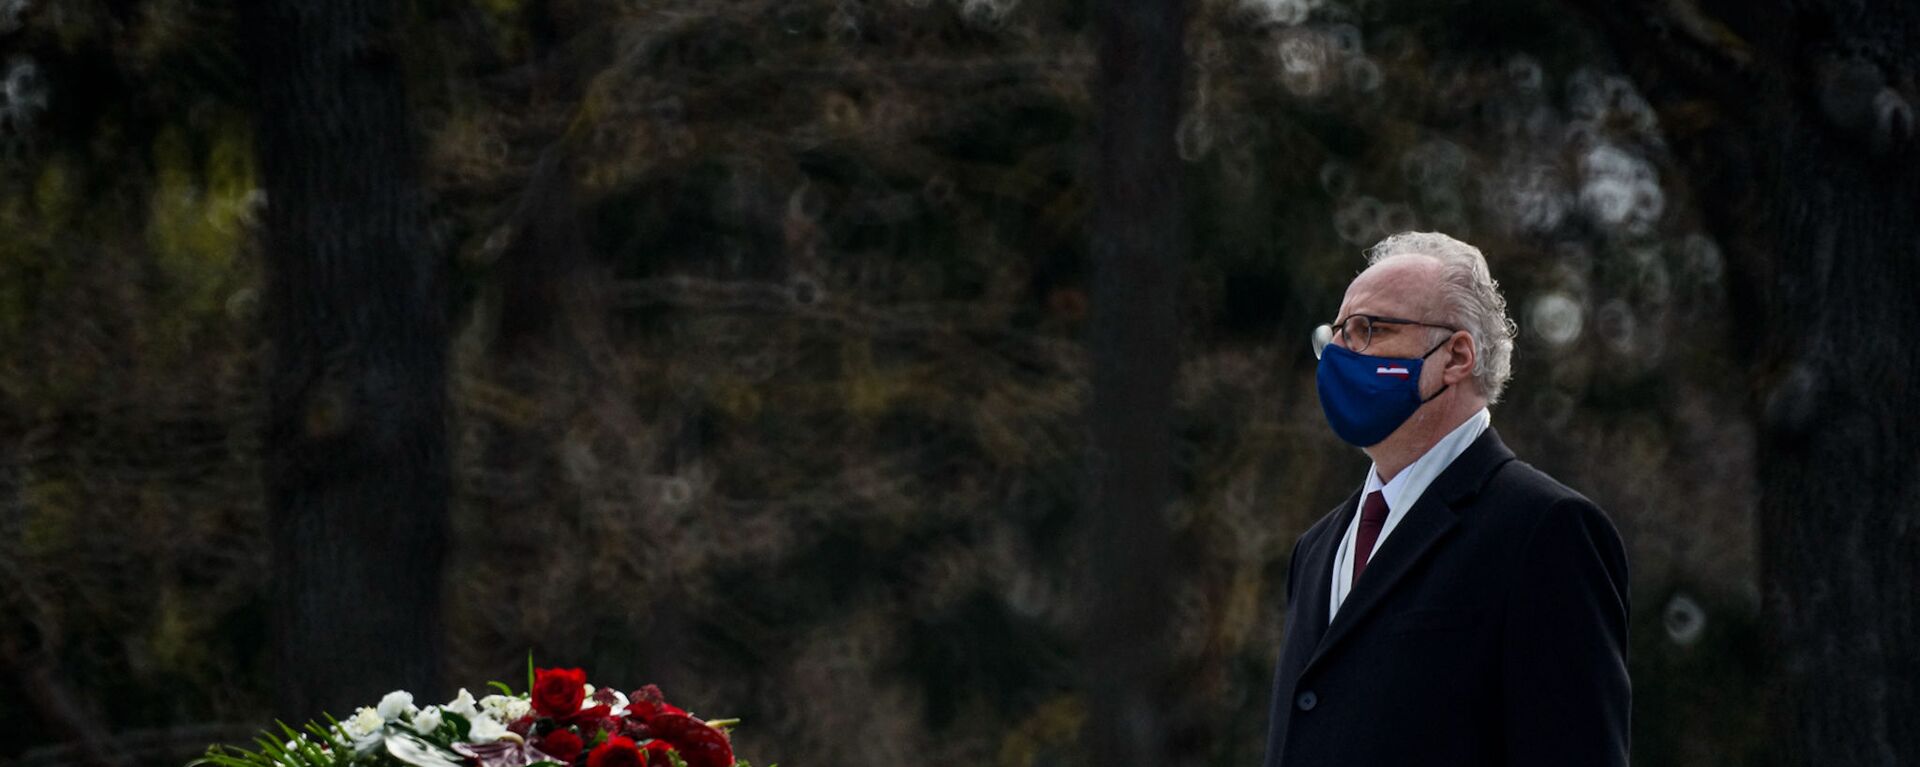 Президент Латвии Эгилс Левитс в День Европы пришел возлагать цветы к мемориалу на воинском Братском кладбище - Sputnik Латвия, 1920, 08.05.2021